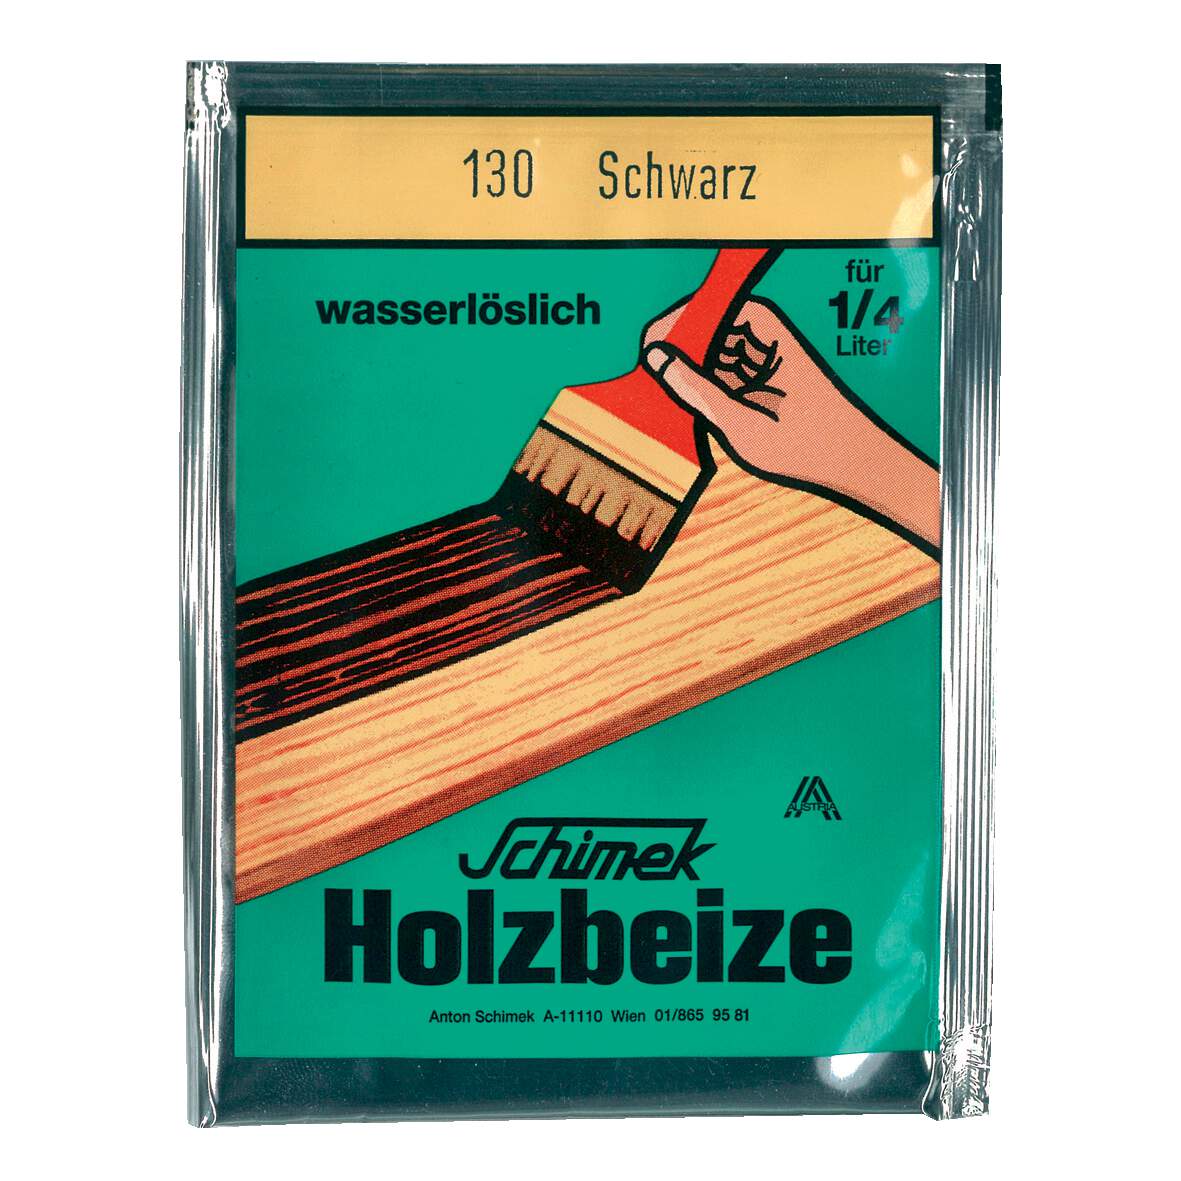 1216621 - Holzbeize Nußbaum hell Nr.101 wasserlöslich